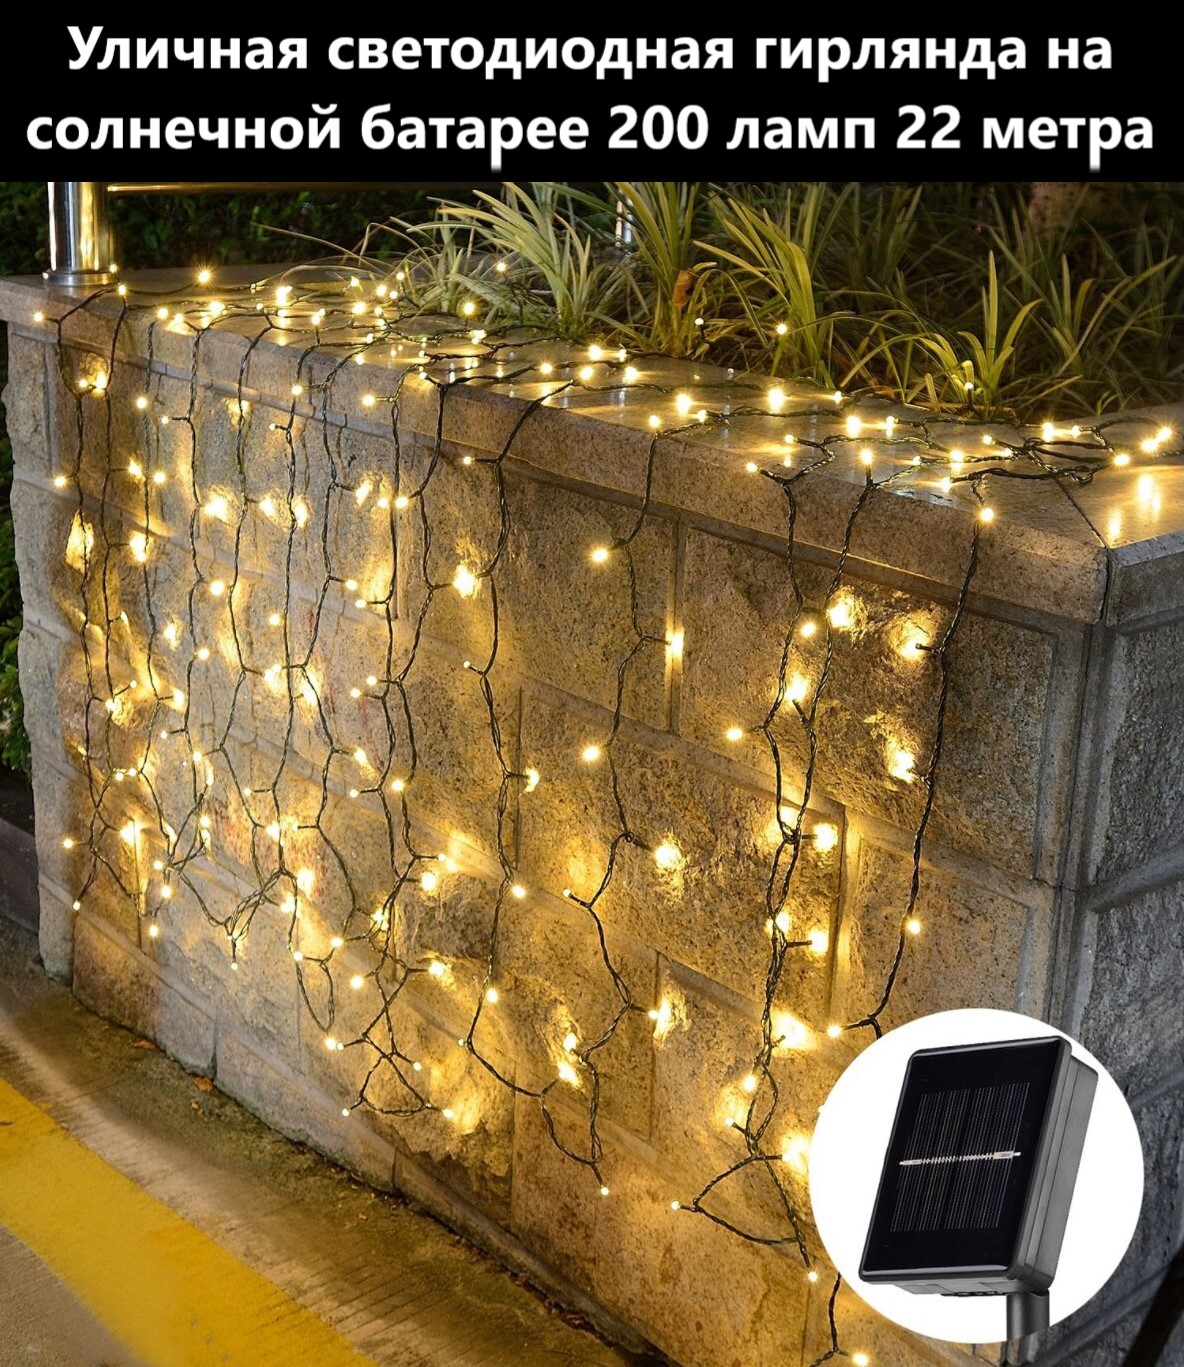 Садовая гирлянда на солнечной батарее BoomBoomShop точки 200 ламп BB-00237 22 м - купить в Москве, цены на Мегамаркет